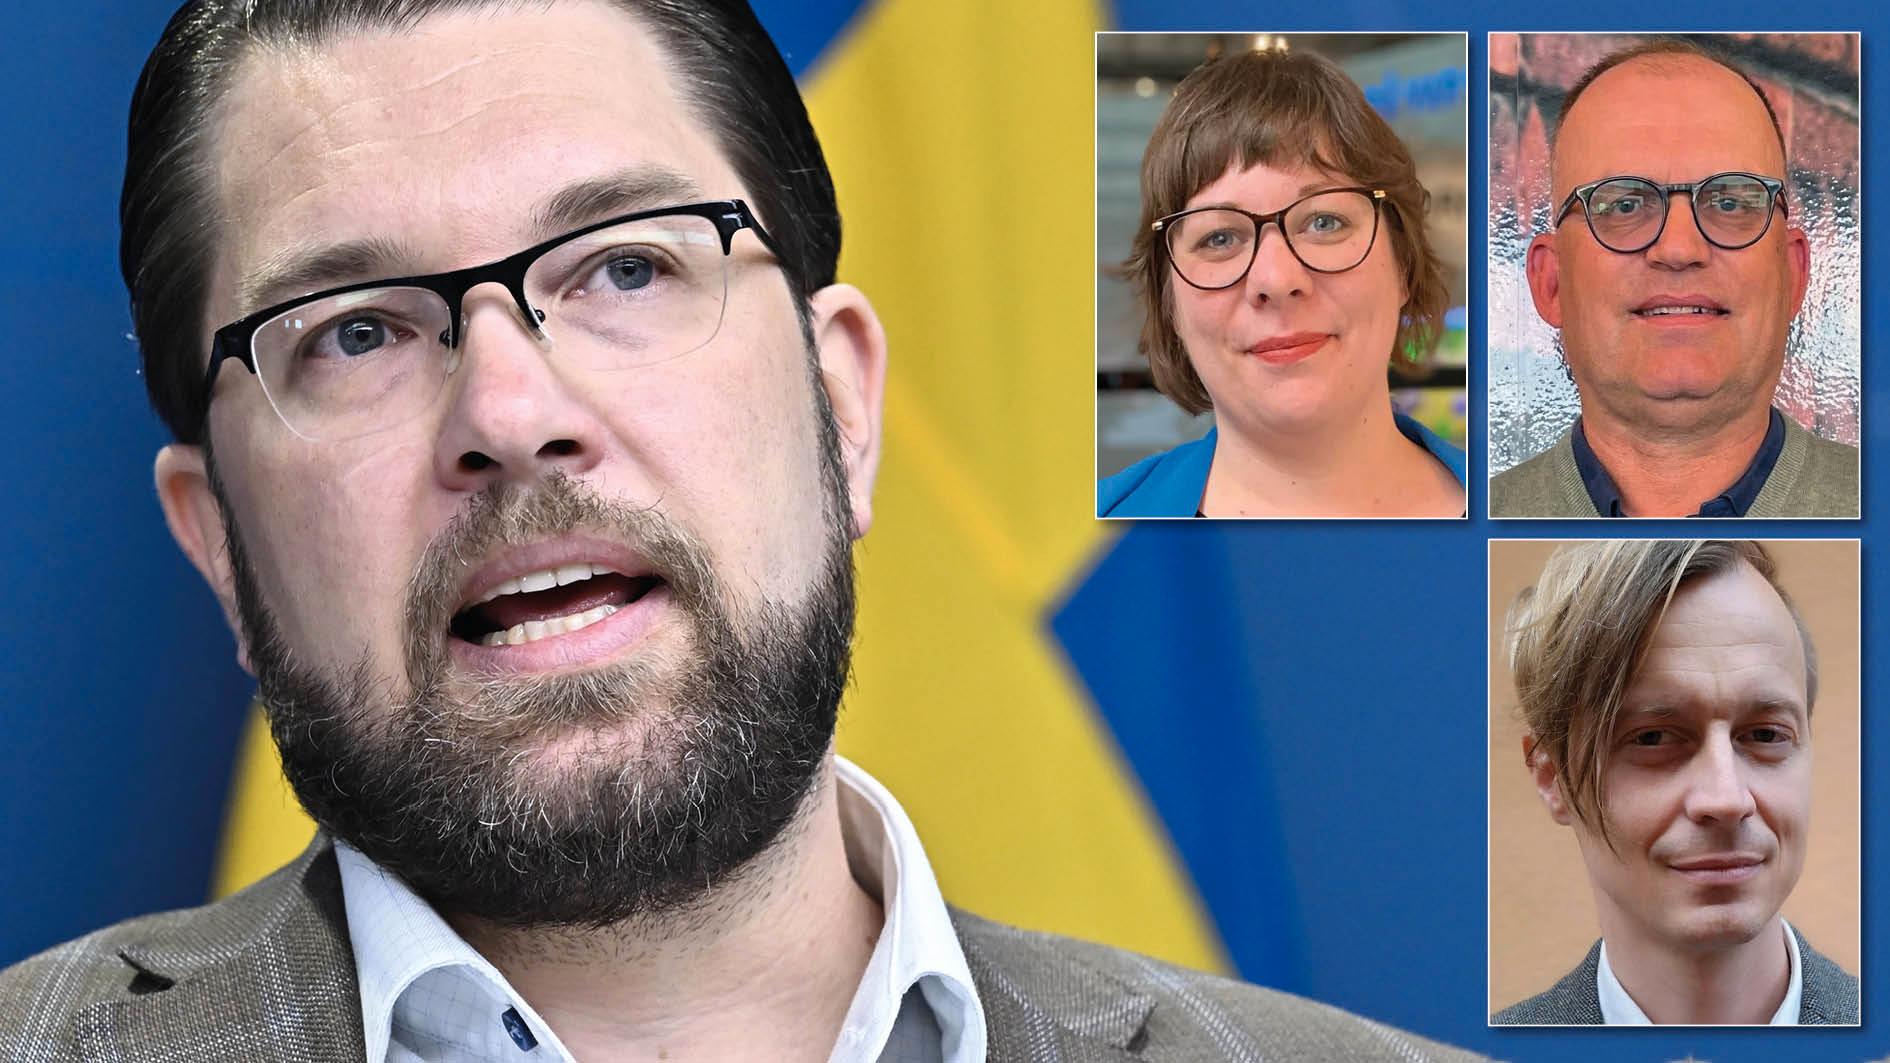 Här och nu har SD möjlighet att förverkliga det som ni i alla sammanhang lyft fram som en ödesfråga för Sverige: satsningar på det svenska kulturarvet. Försumma inte denna möjlighet i budgetförhandlingarna, skriver Länsmuseernas samarbetsråd.